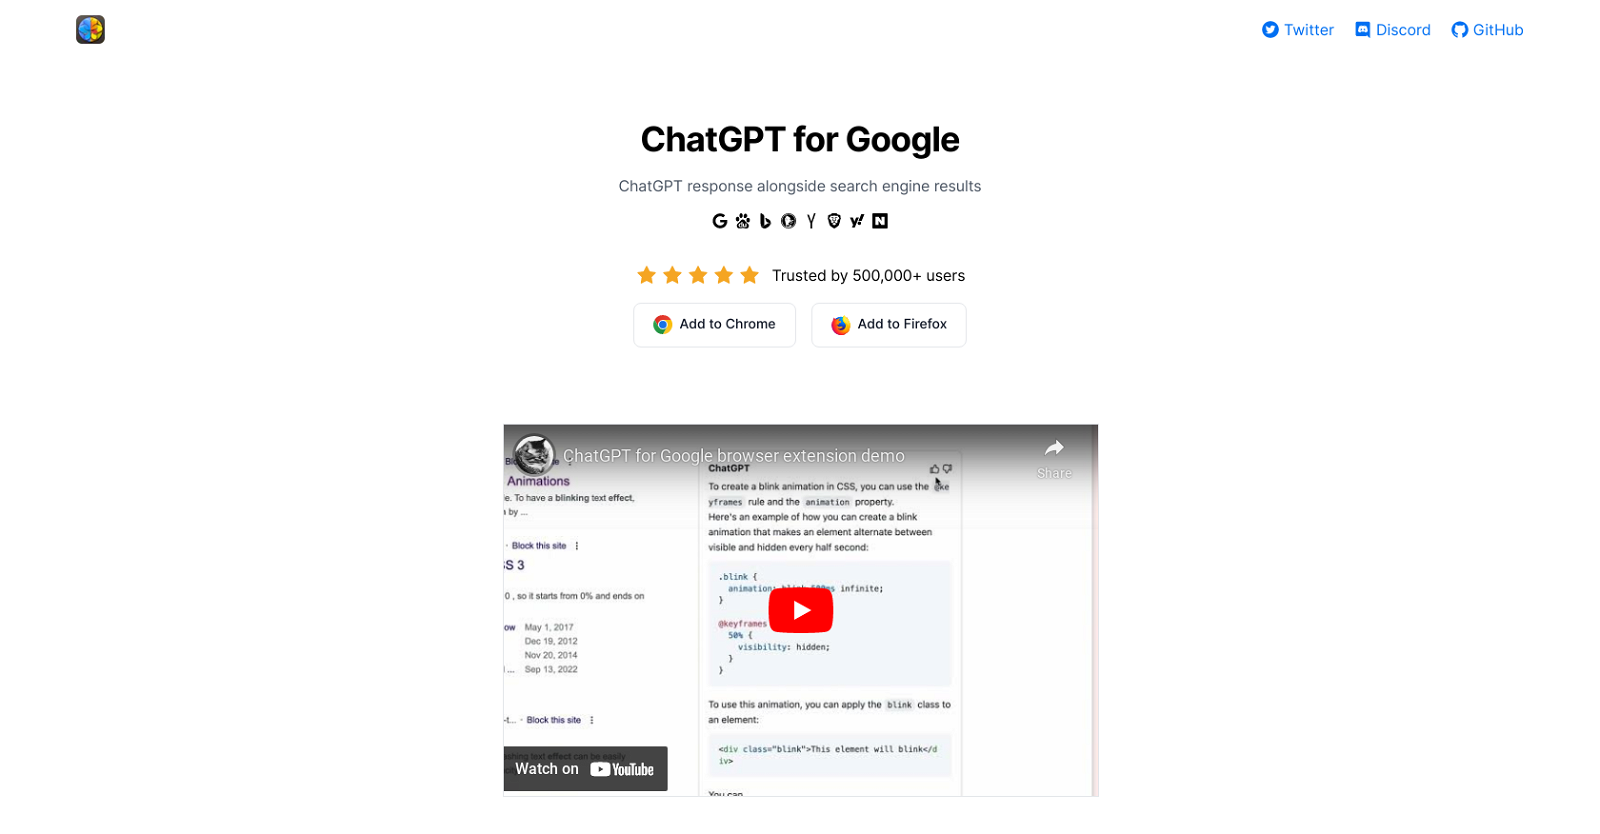 ChatGPT for Google website